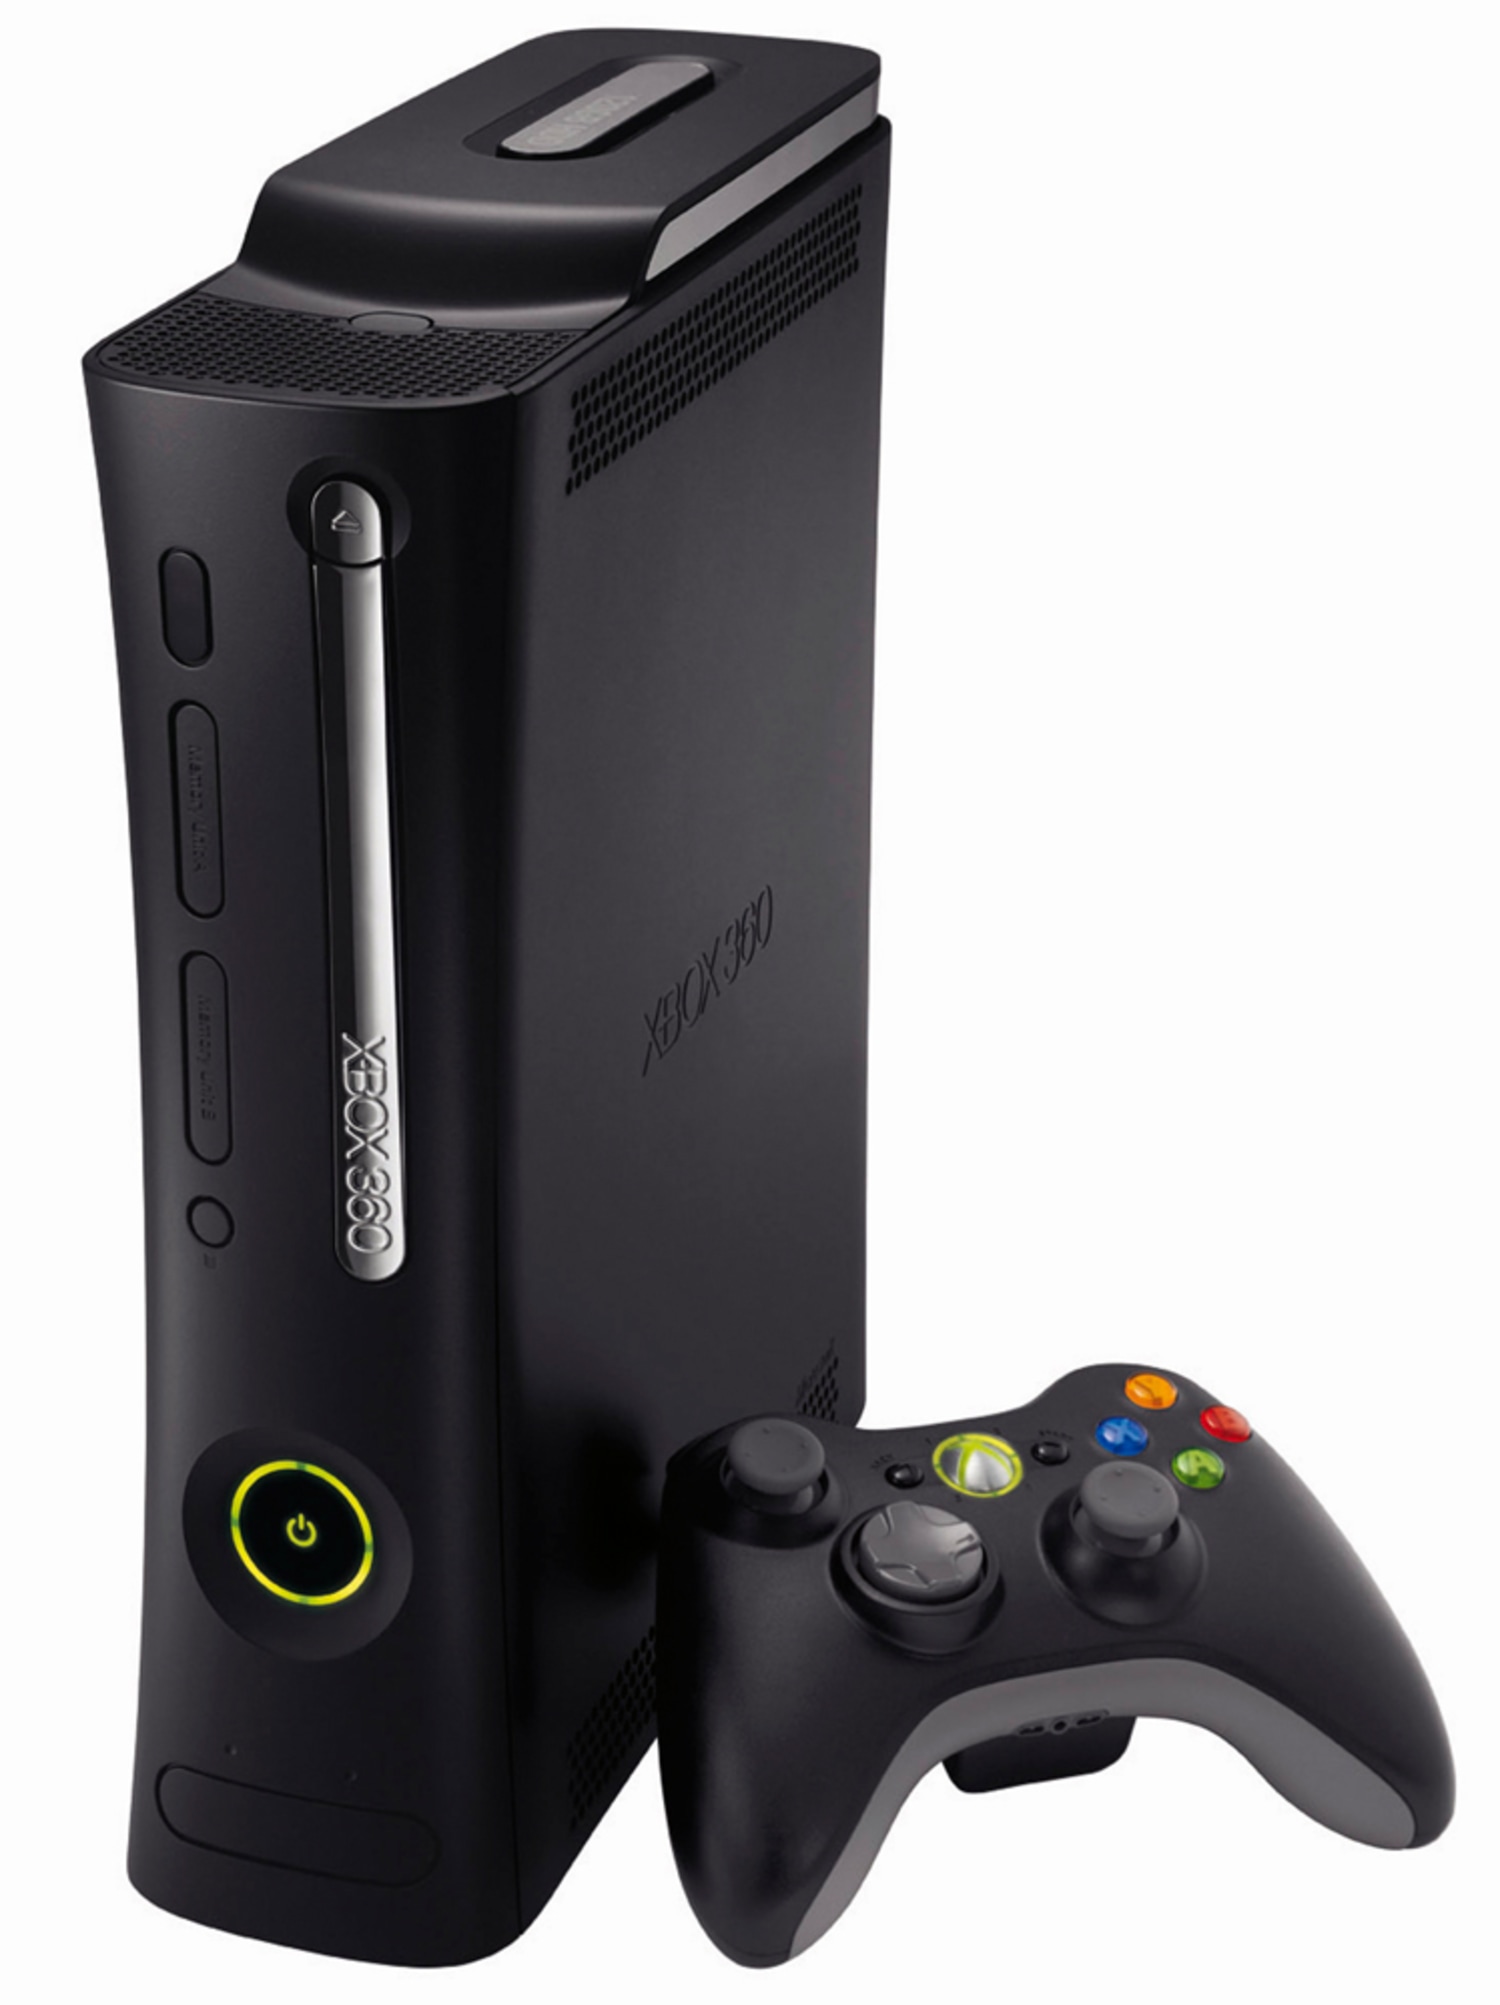 Xbox 360 life. Игровая приставка хбокс 360. Игровая приставка Xbox 360 250 GB. Xbox 360 консоль. Хбокс 360 Elite.